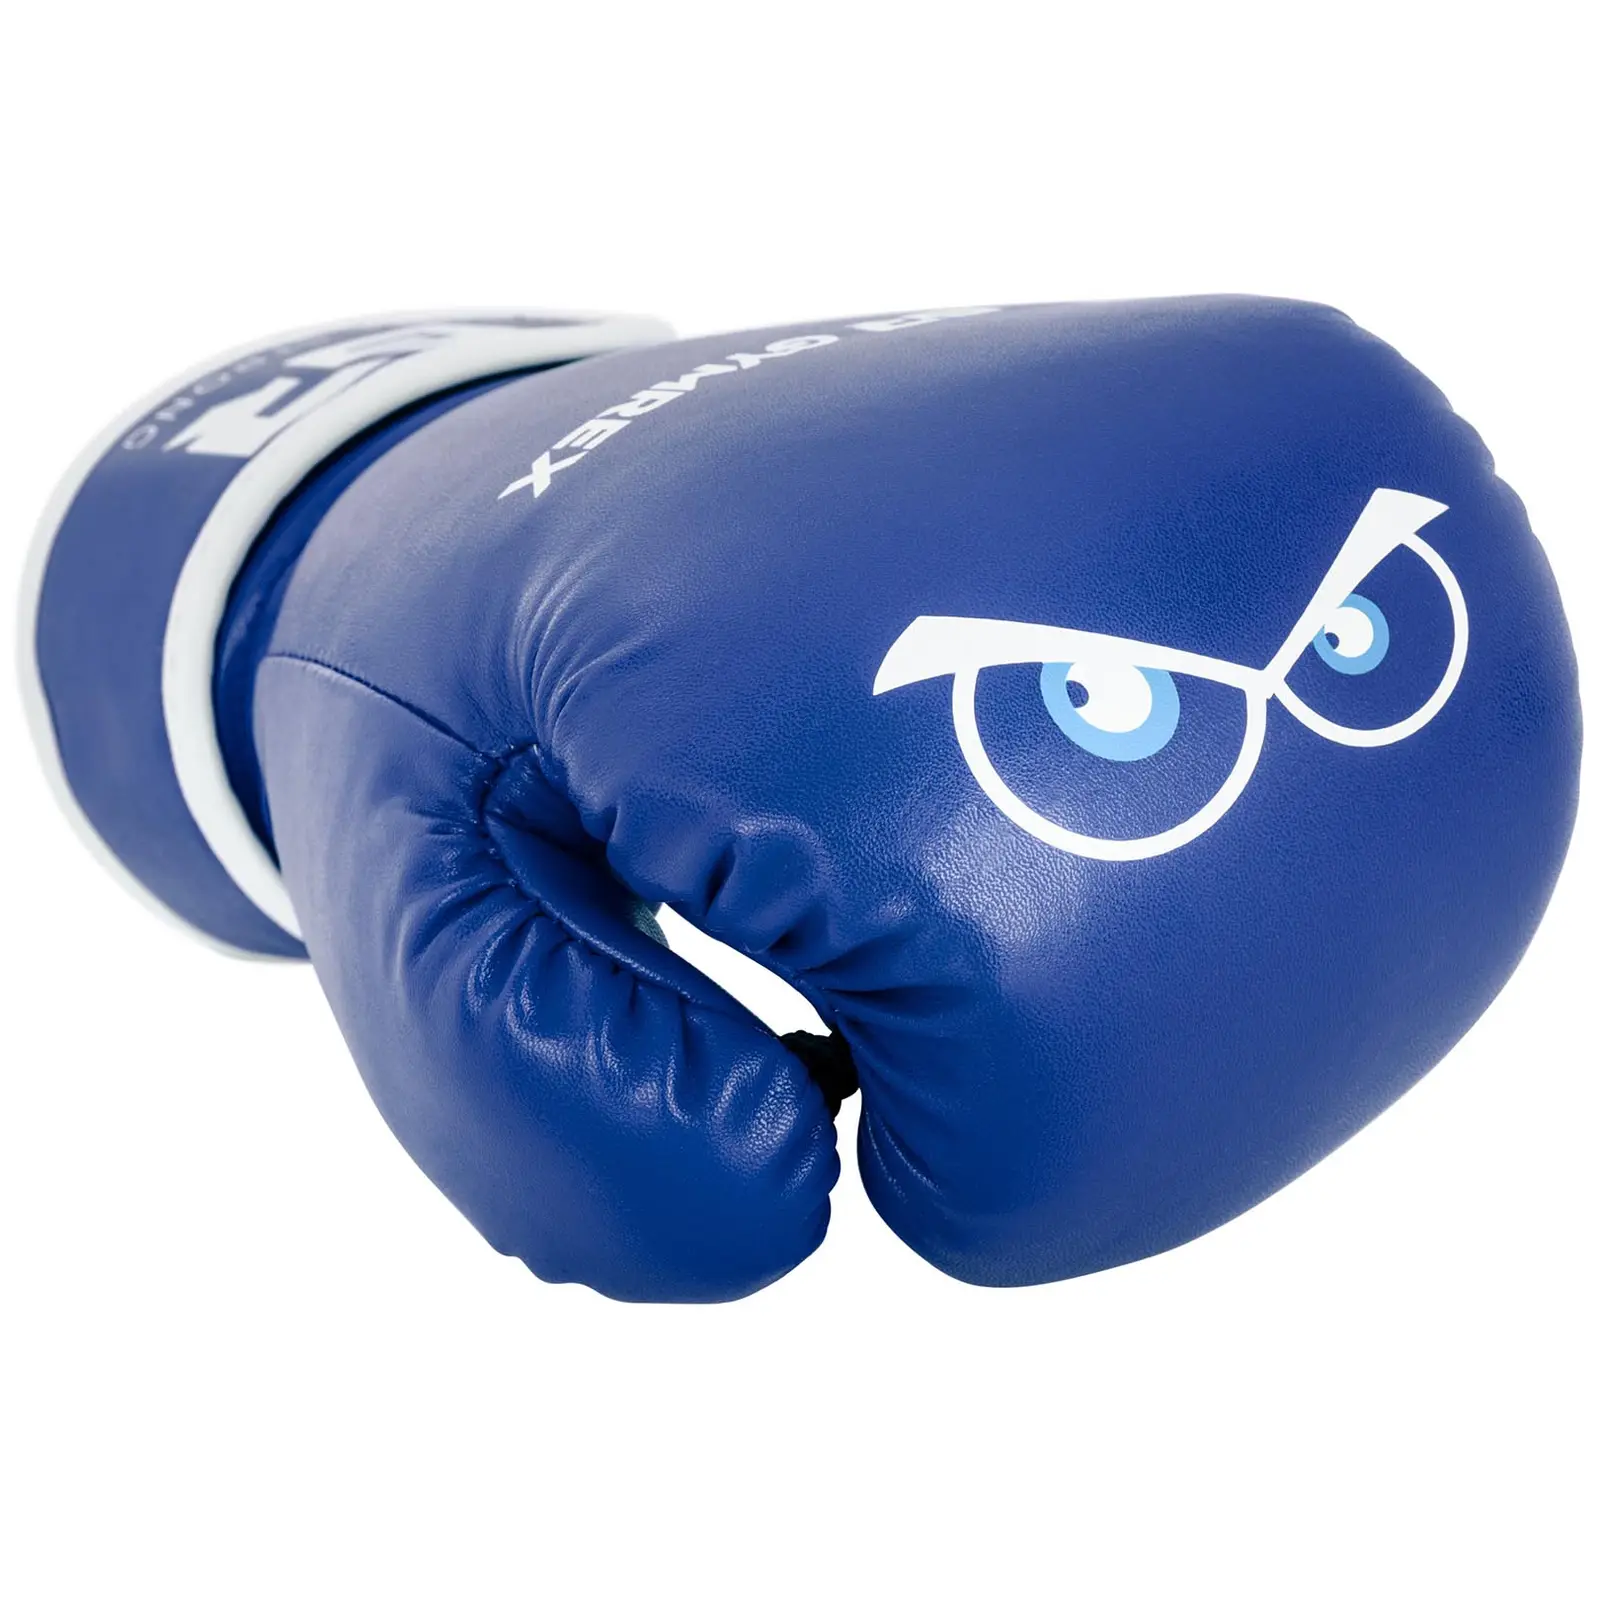 Rękawice bokserskie dla dzieci - niebieskie - 4 oz